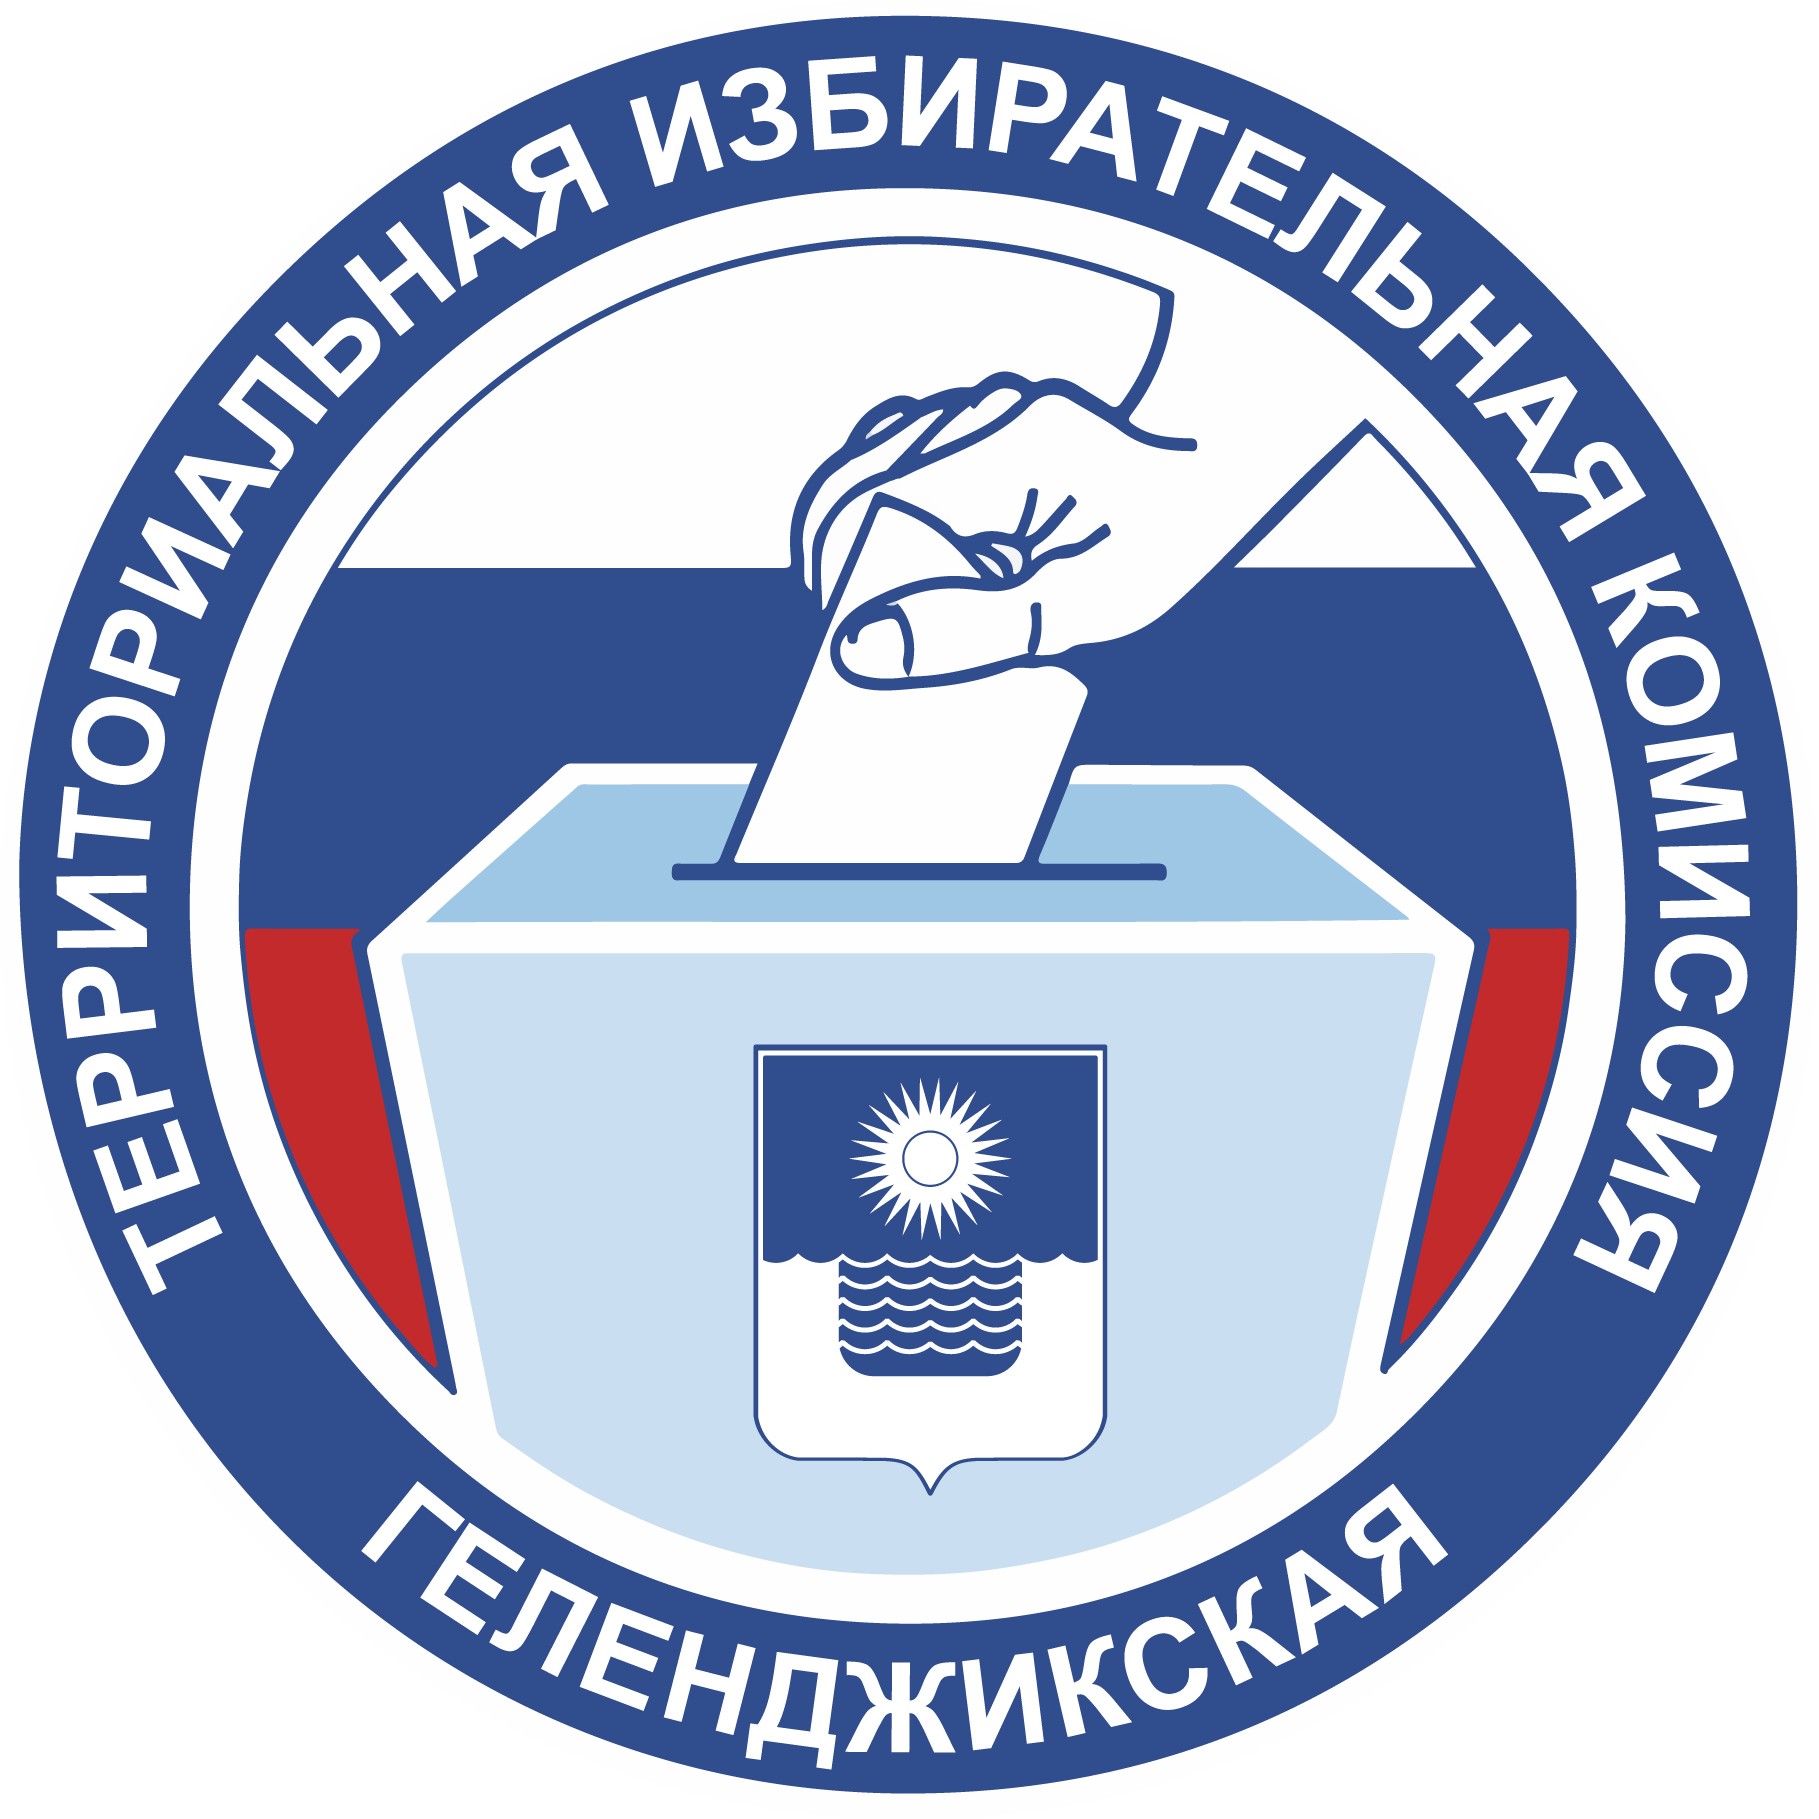 Состоялись заседания территориальной избирательной комиссии Геленджикская